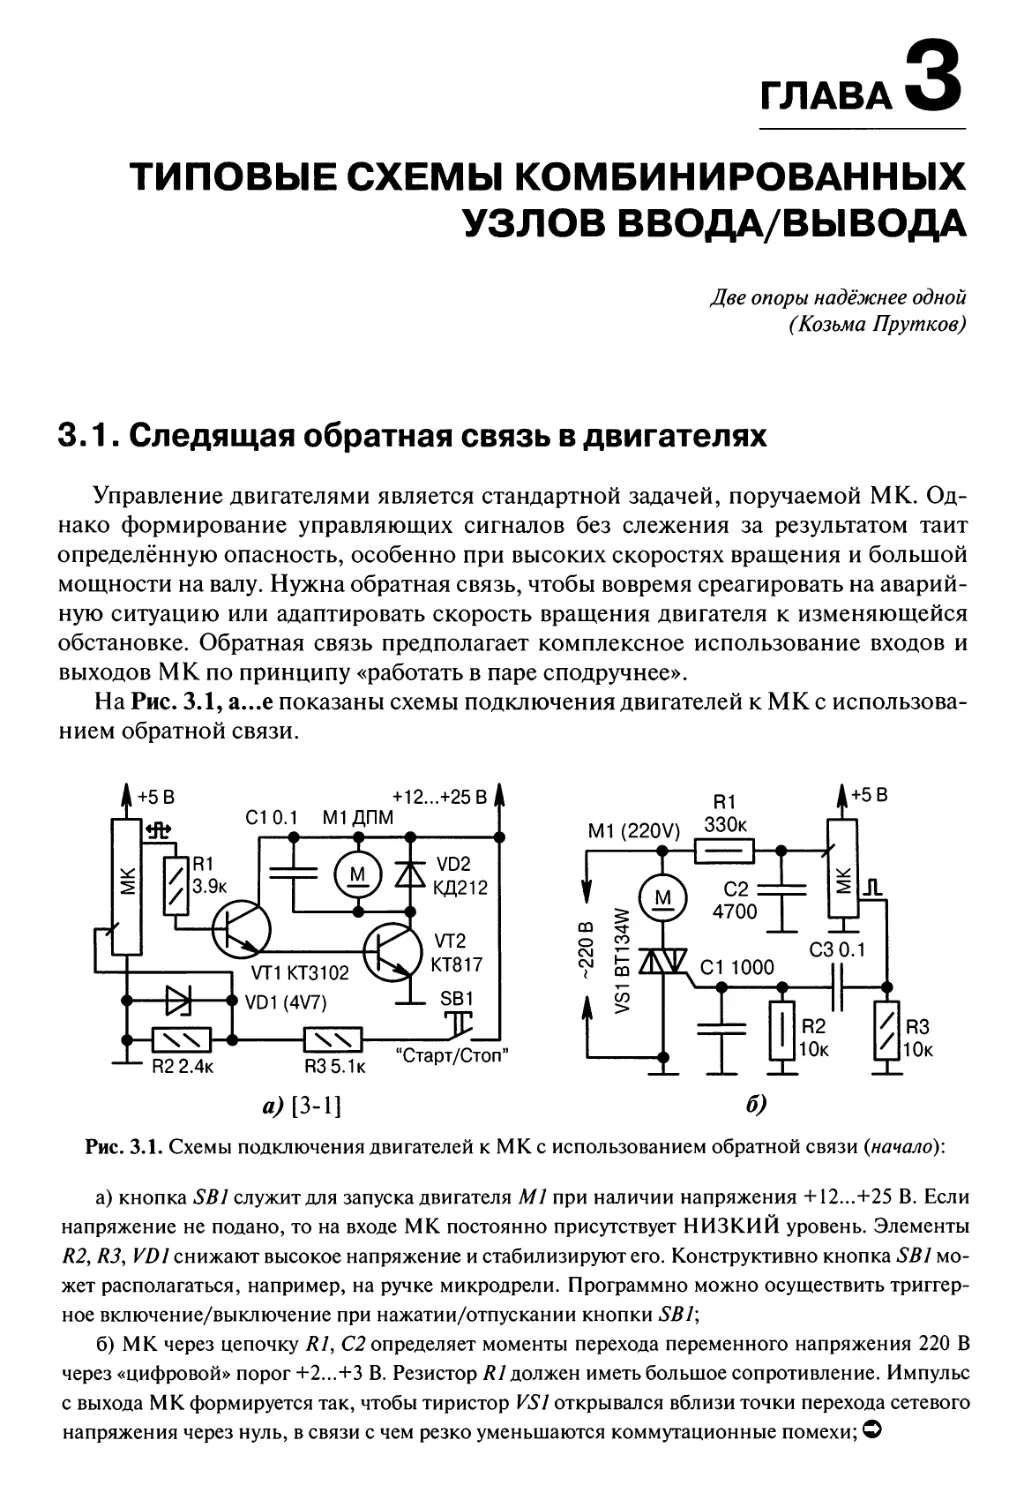 Глава 3. Типовые схемы комбинированных узлов ввода/вывода
3.1. Следящая обратная связь в двигателях